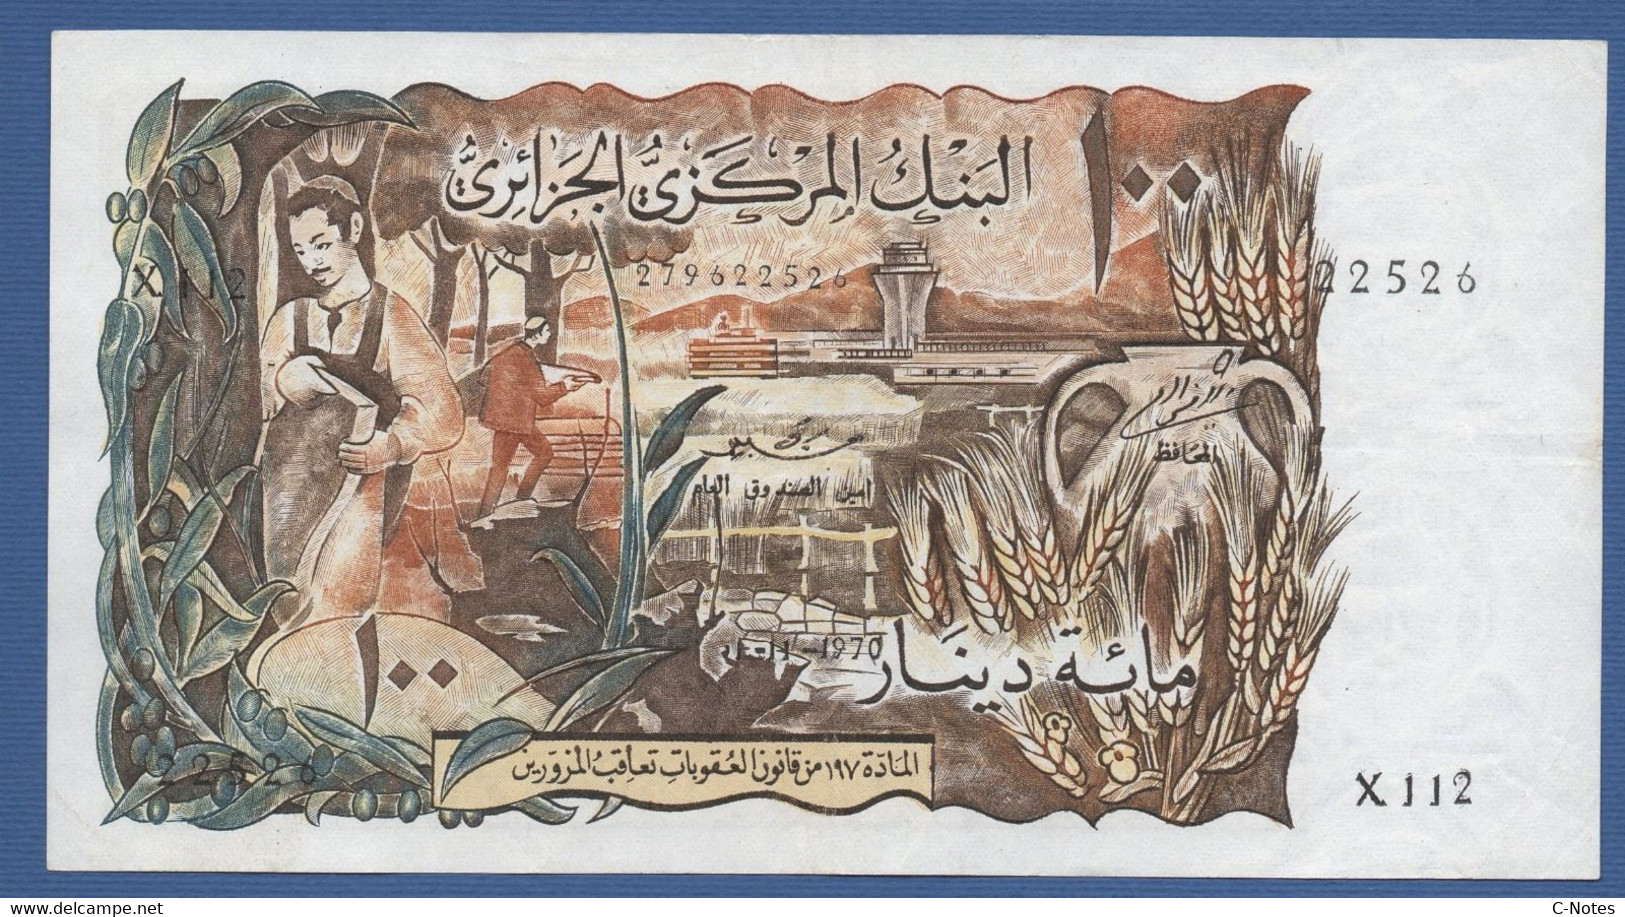 ALGERIA - P.128 – 100 Dinars 01.11.1970 -  Cirulated VF+ Serie X112 22526 - Algérie